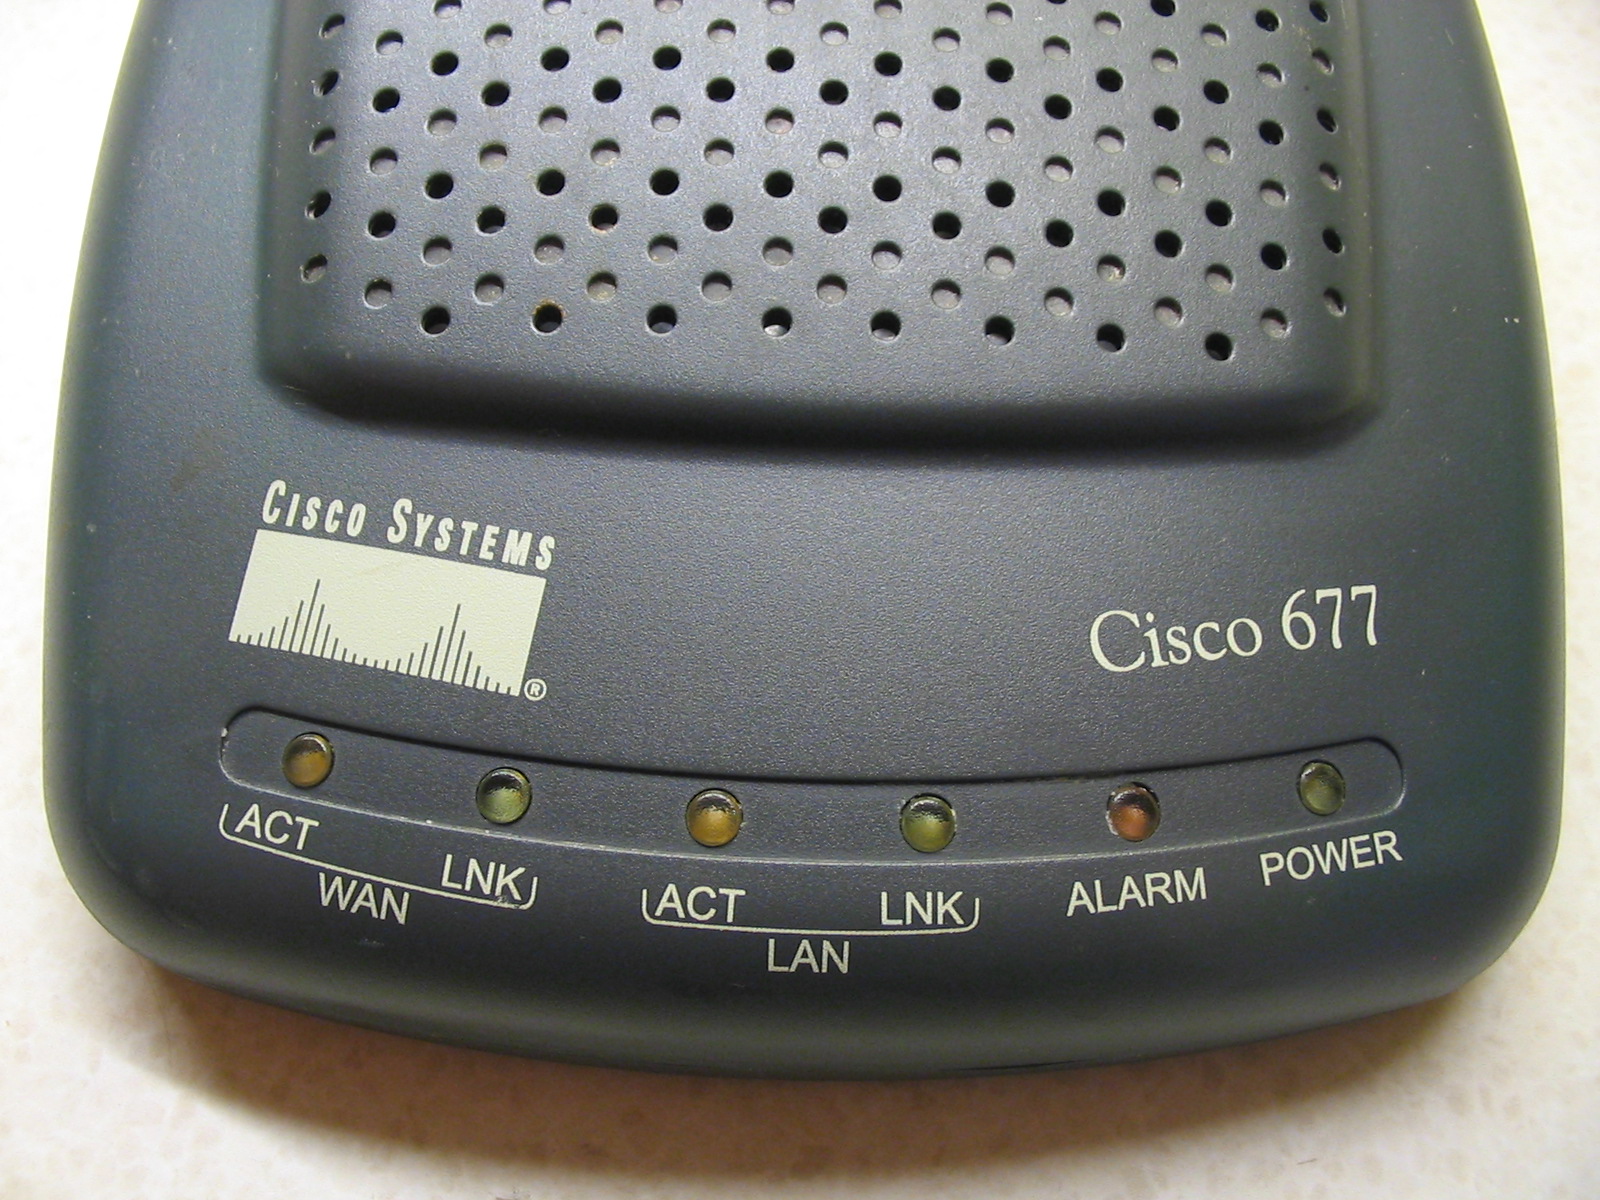 Router_Cisco_677_(ubt)_1.jpeg